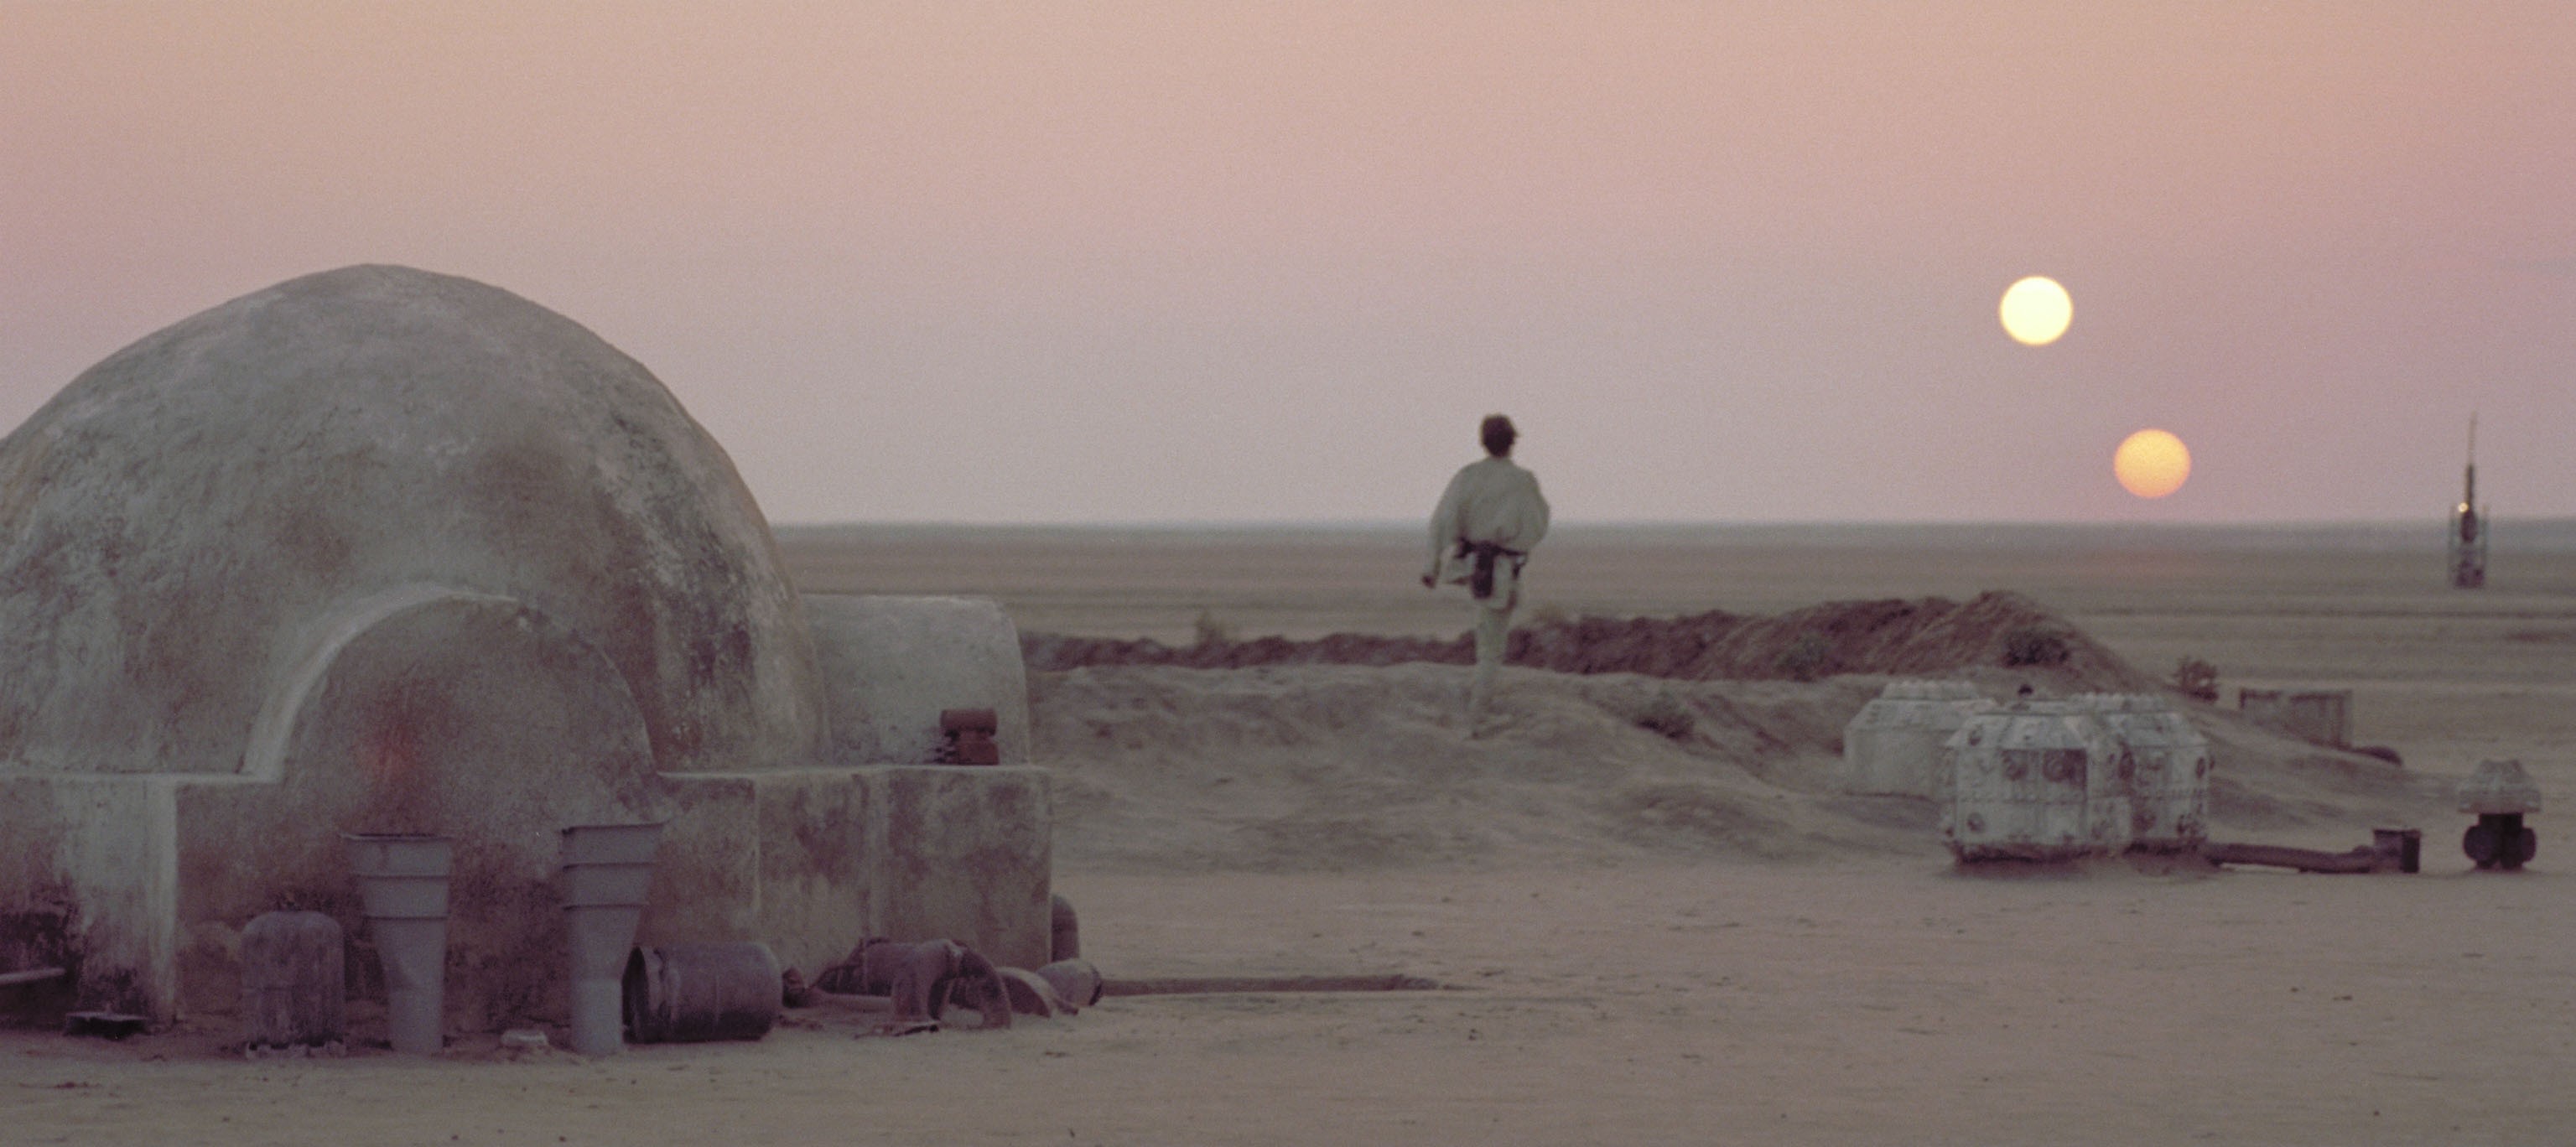 Parece Tatooine, mas é real (Foto: Divulgação)